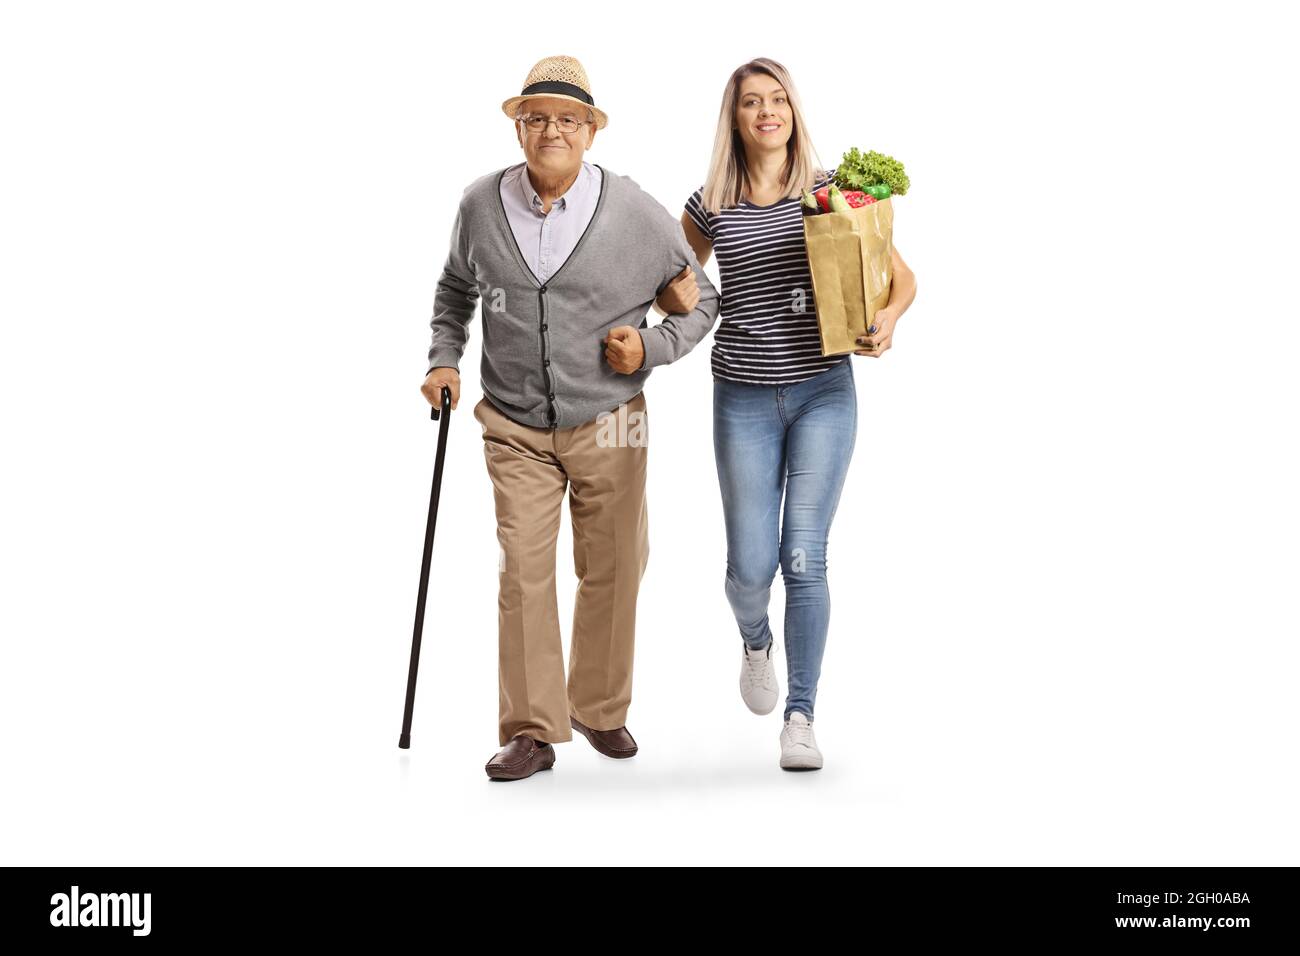 In voller Länge Porträt einer jungen Frau, die eine Lebensmitteltasche trägt und einem älteren Mann hilft, isoliert auf weißem Hintergrund Stockfoto